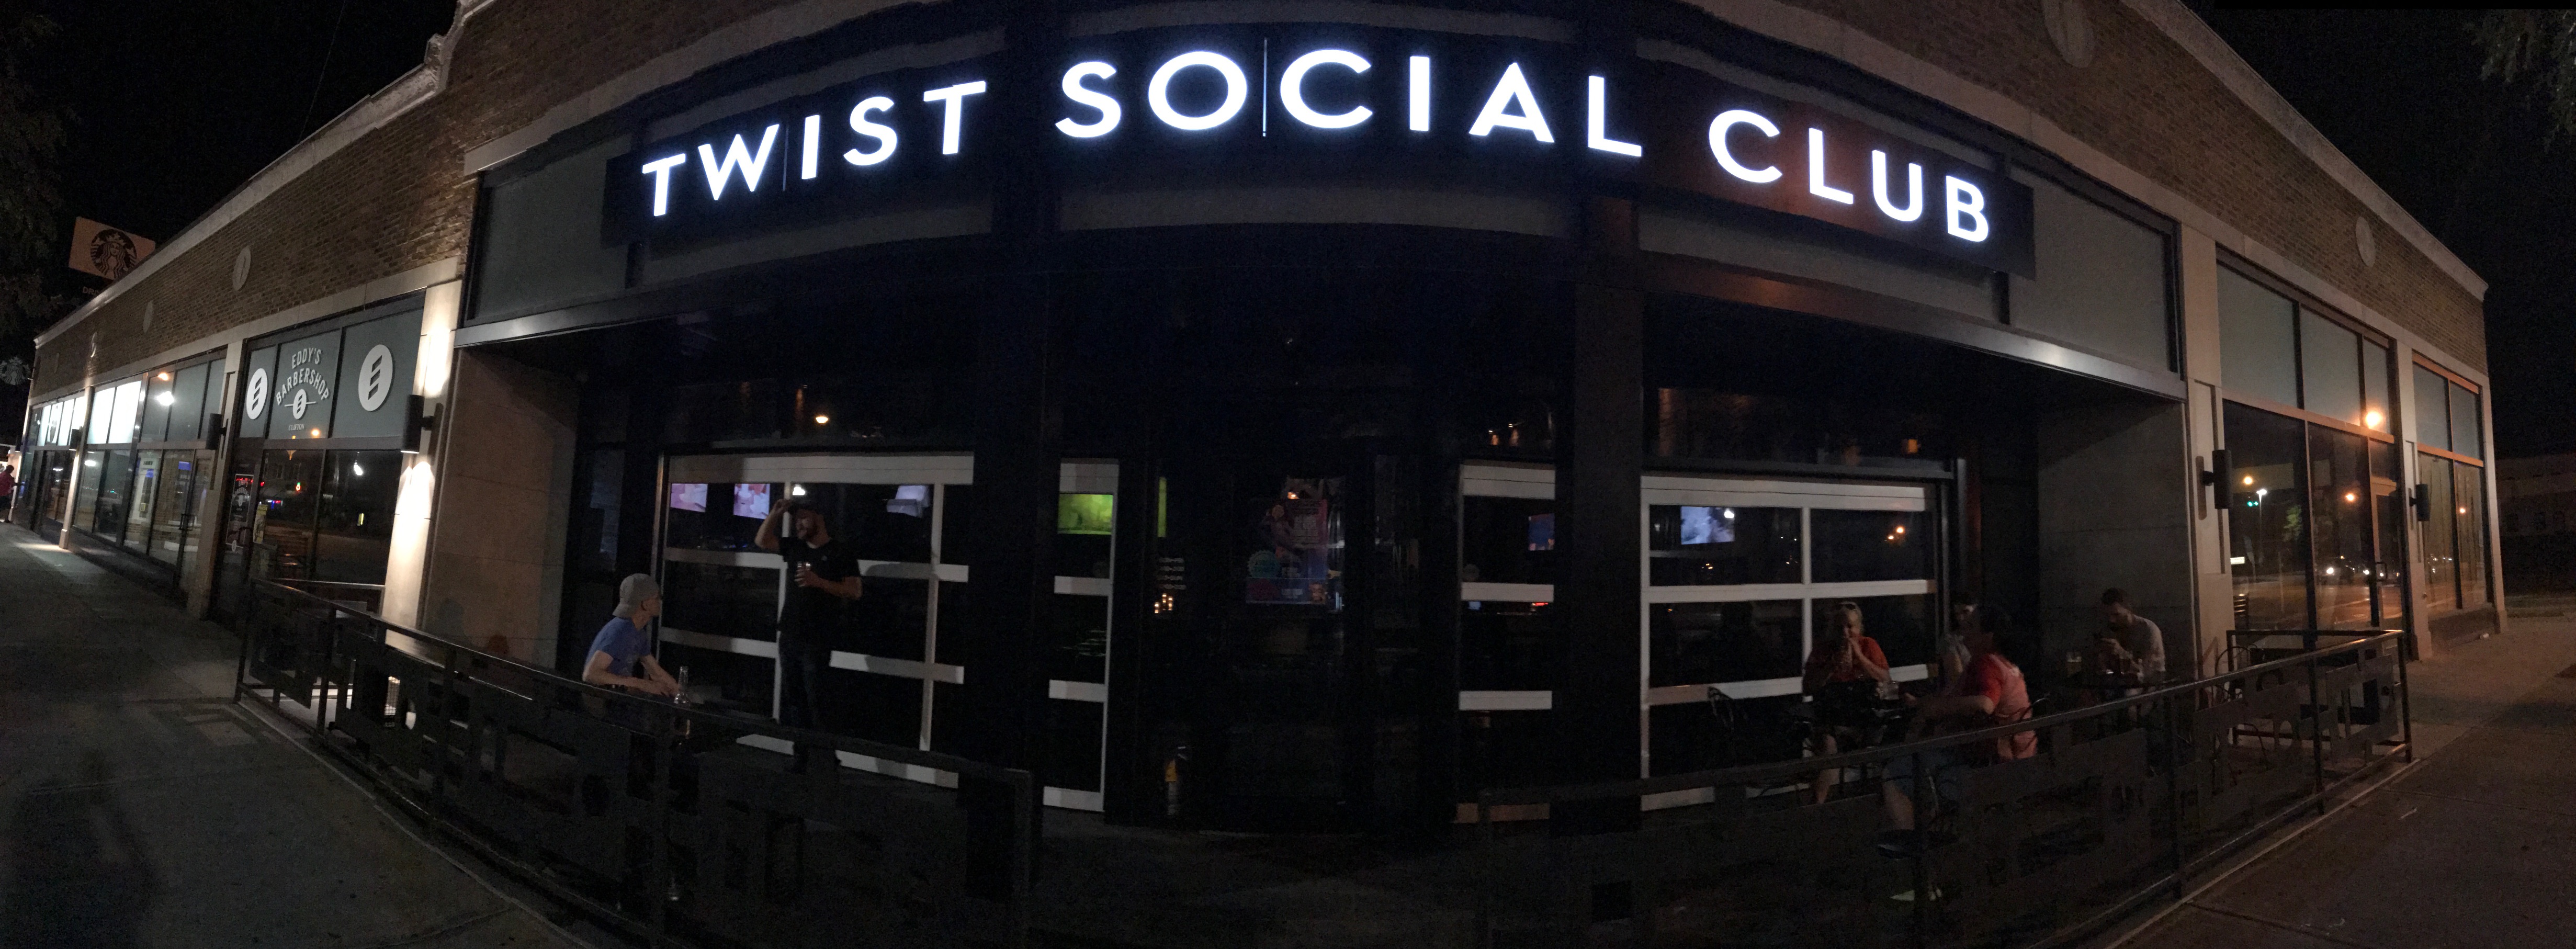 Twist Social Club - Night club in Cleveland, OH